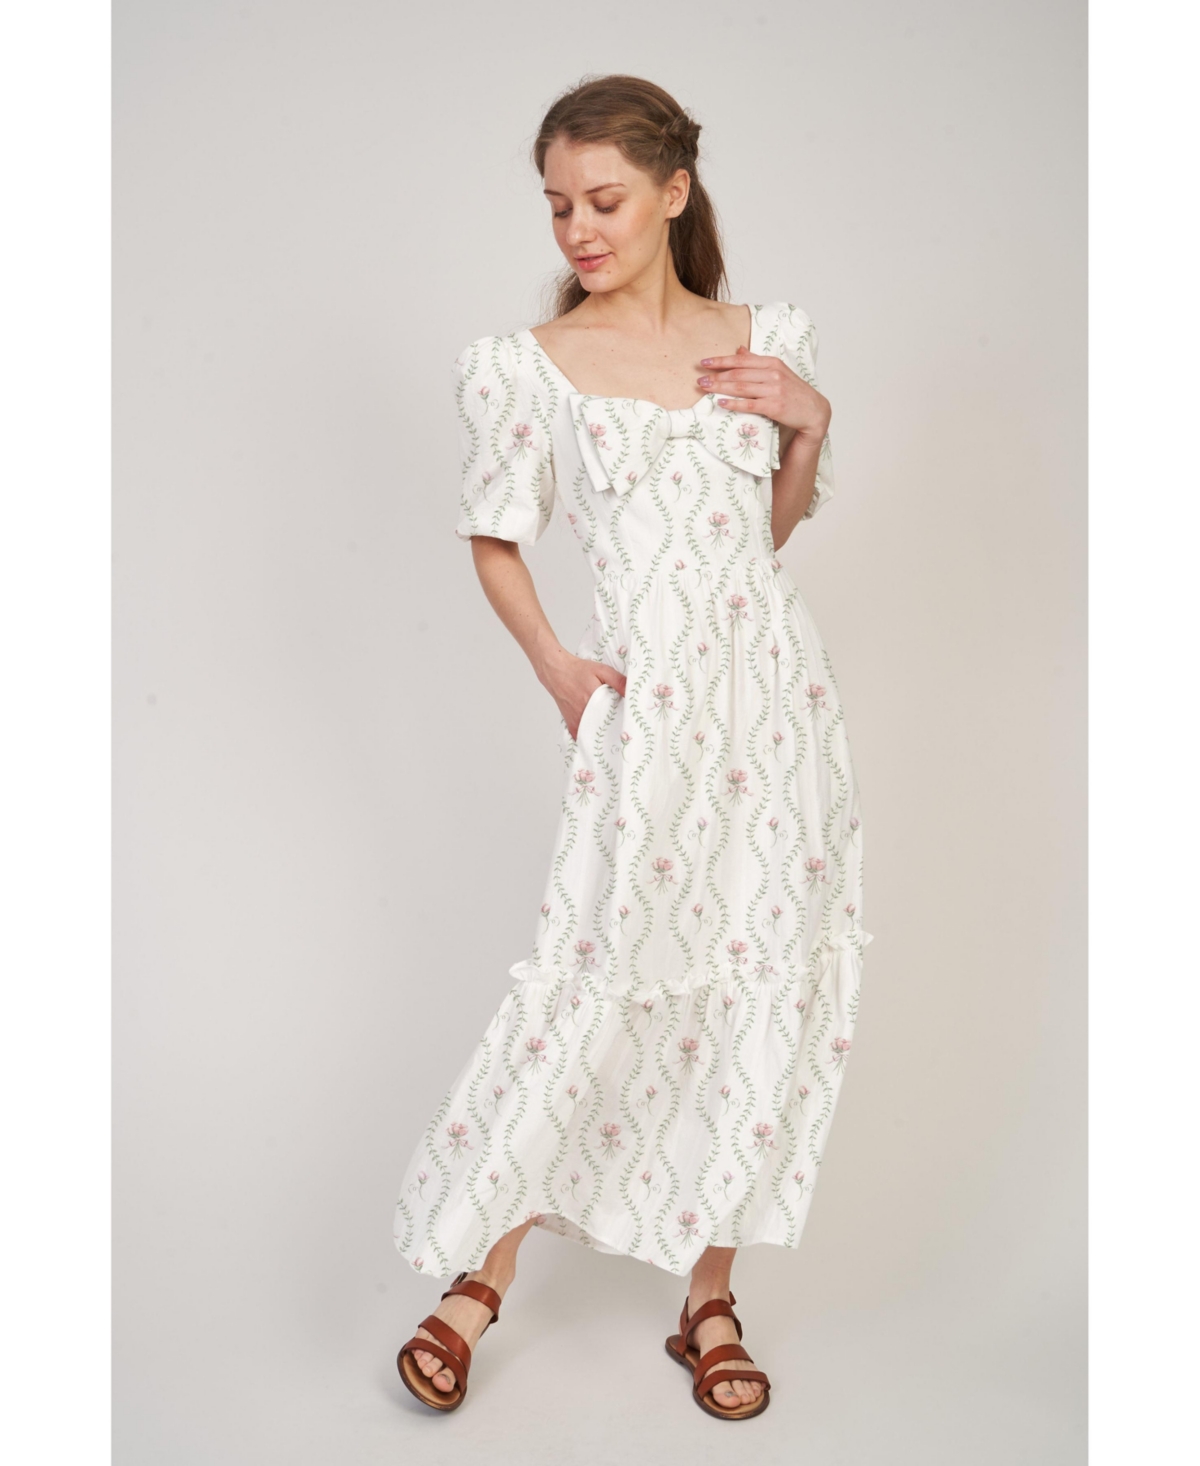 Women's Maxi A-Line Kylie Dress - White floral vine